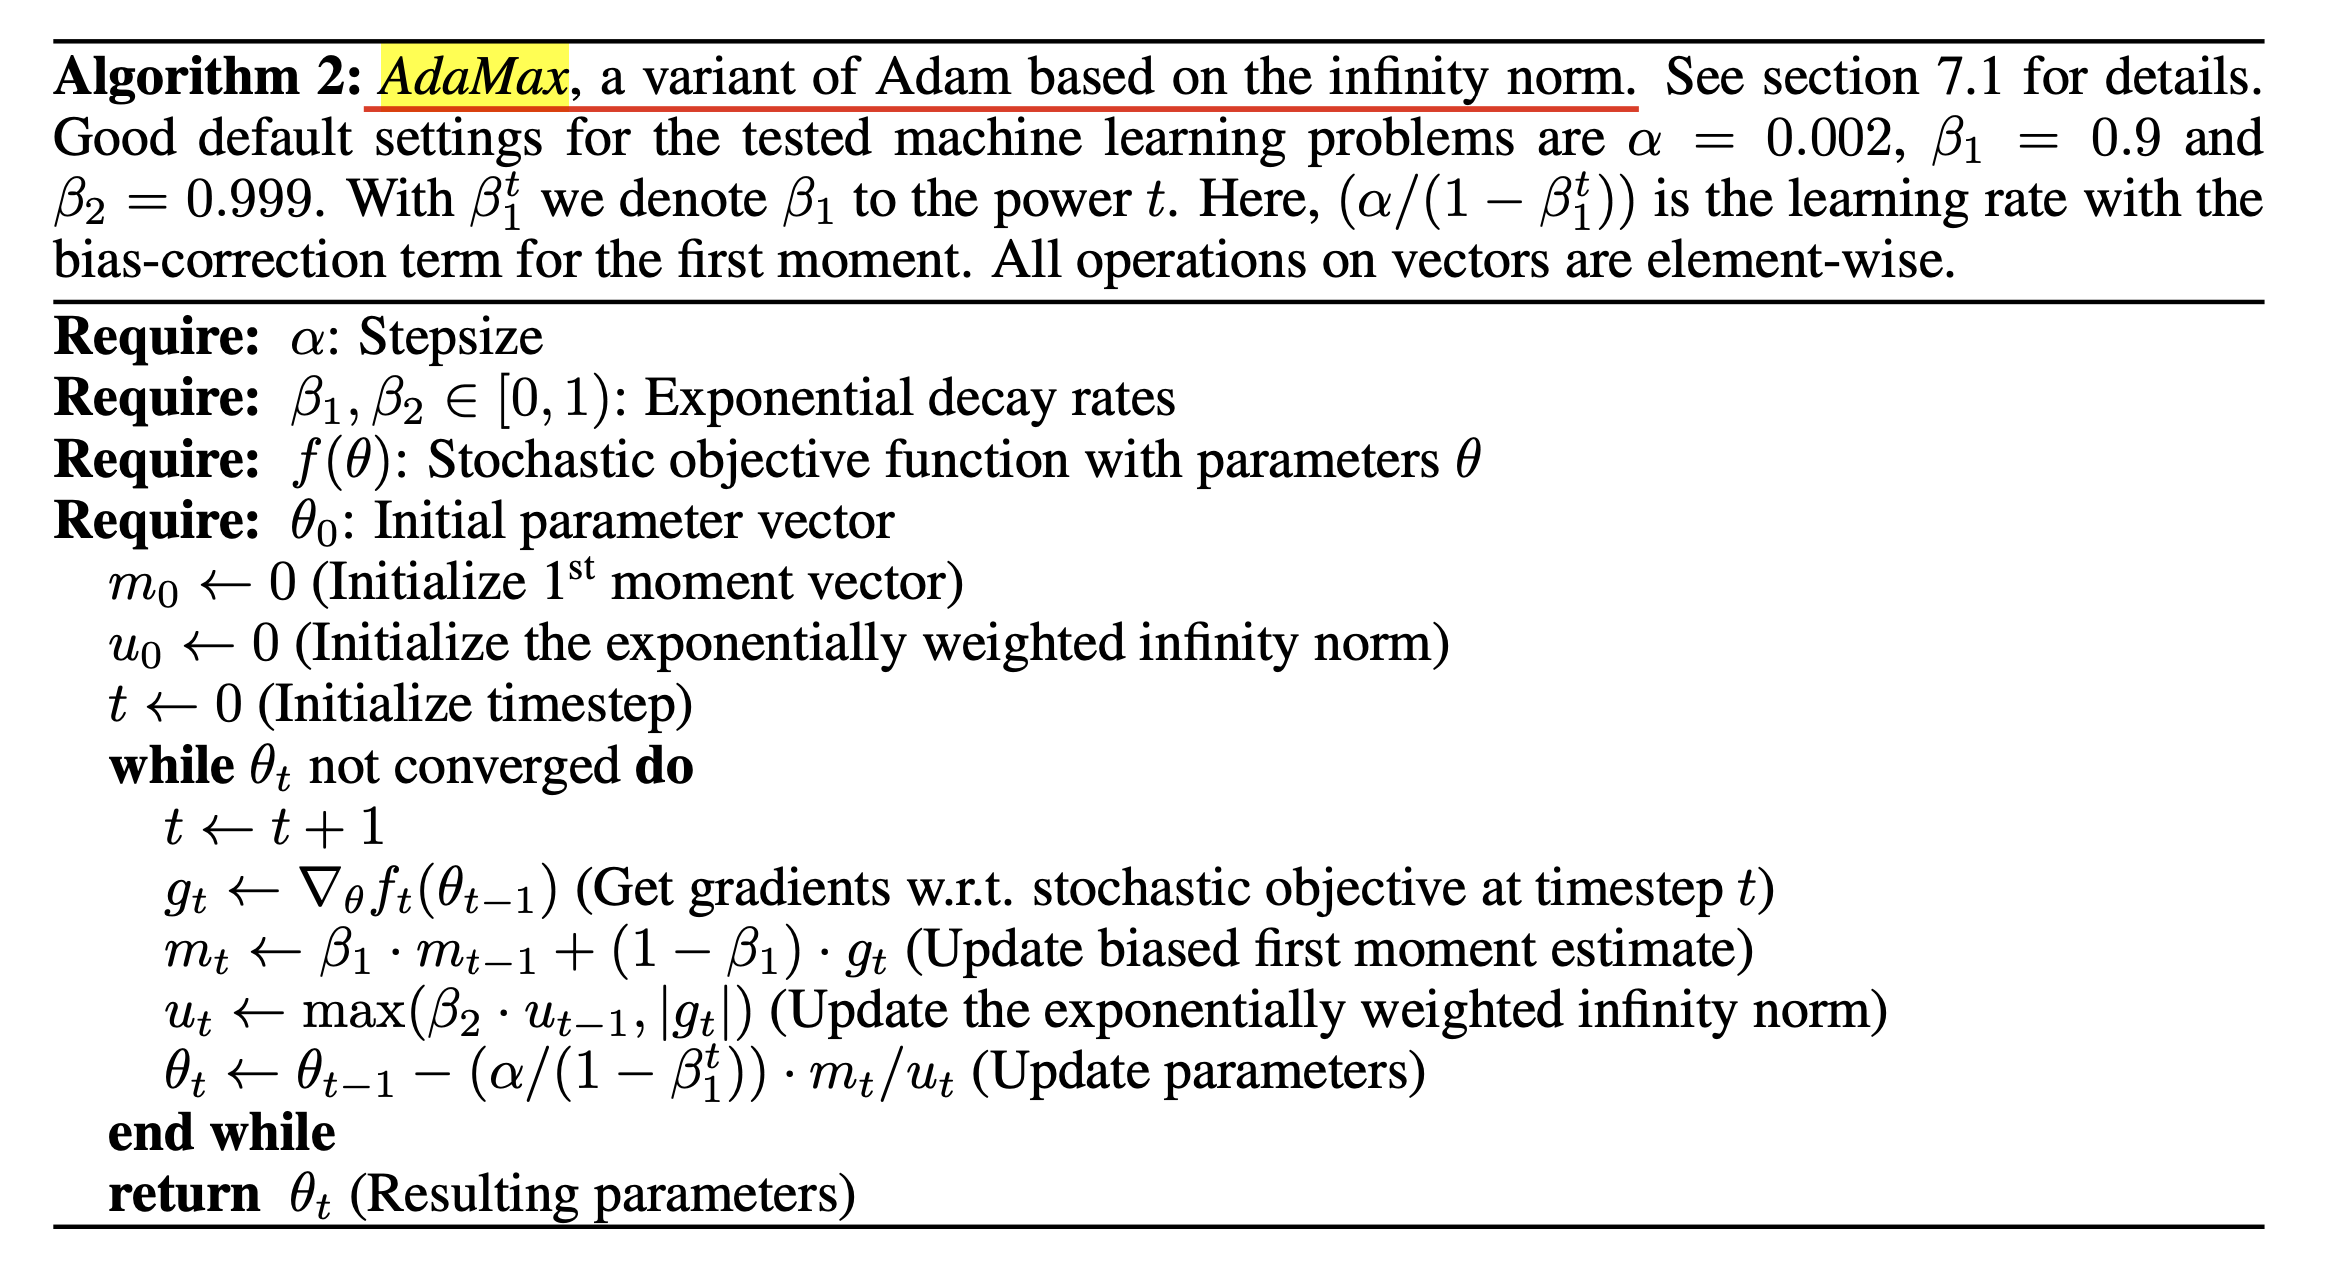 adam_paper_algorithm_fig2